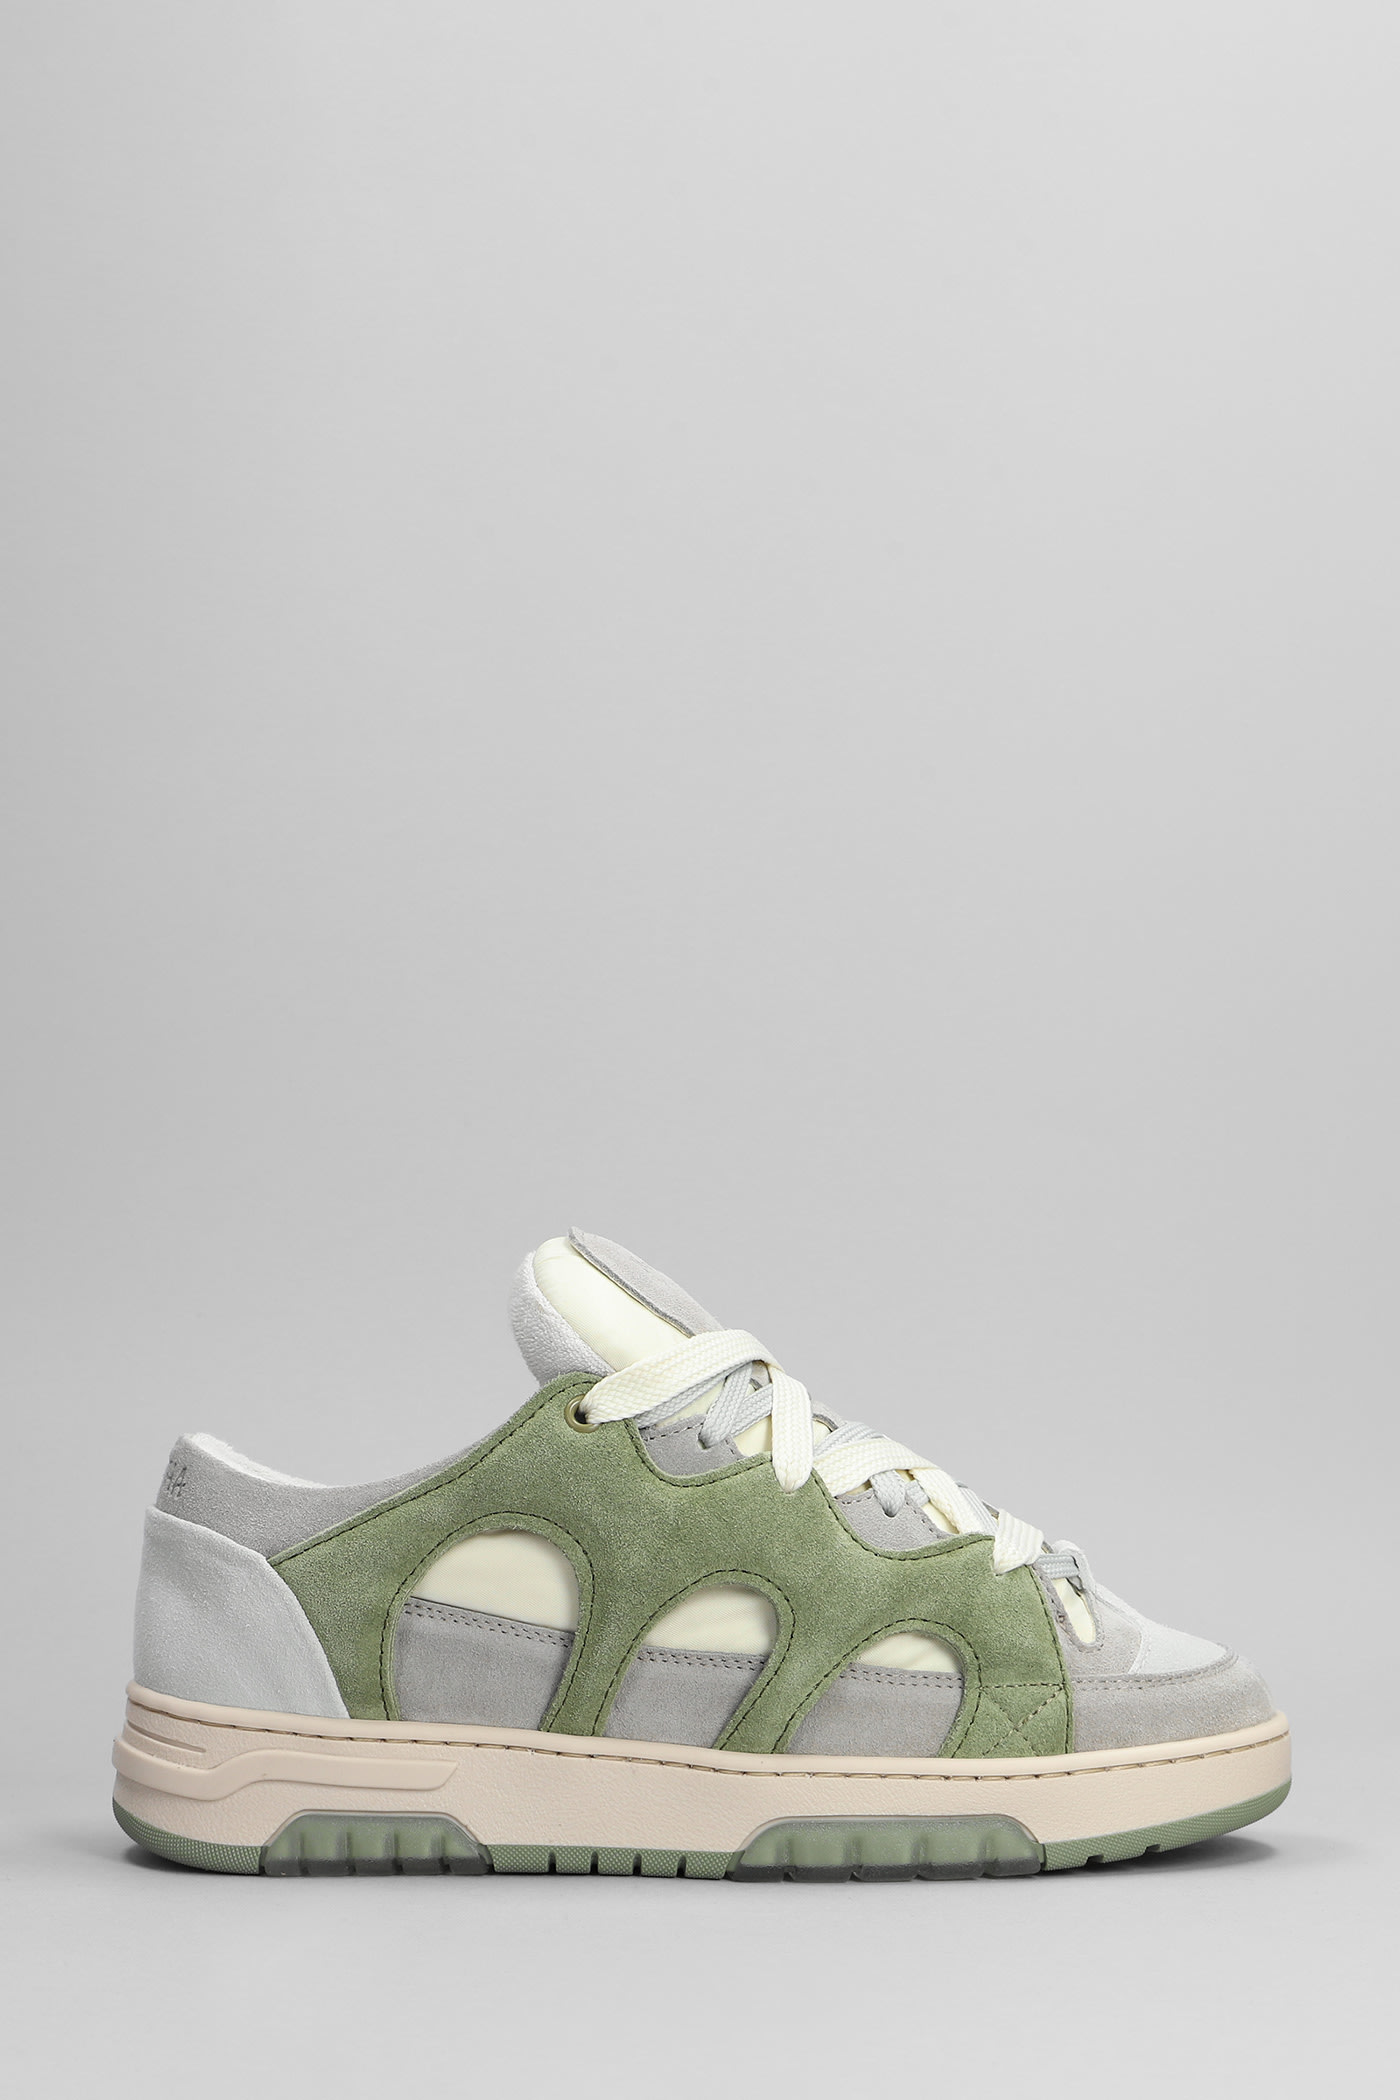 Danilo Paura Santha Model 1 Sneakers In Green Suede